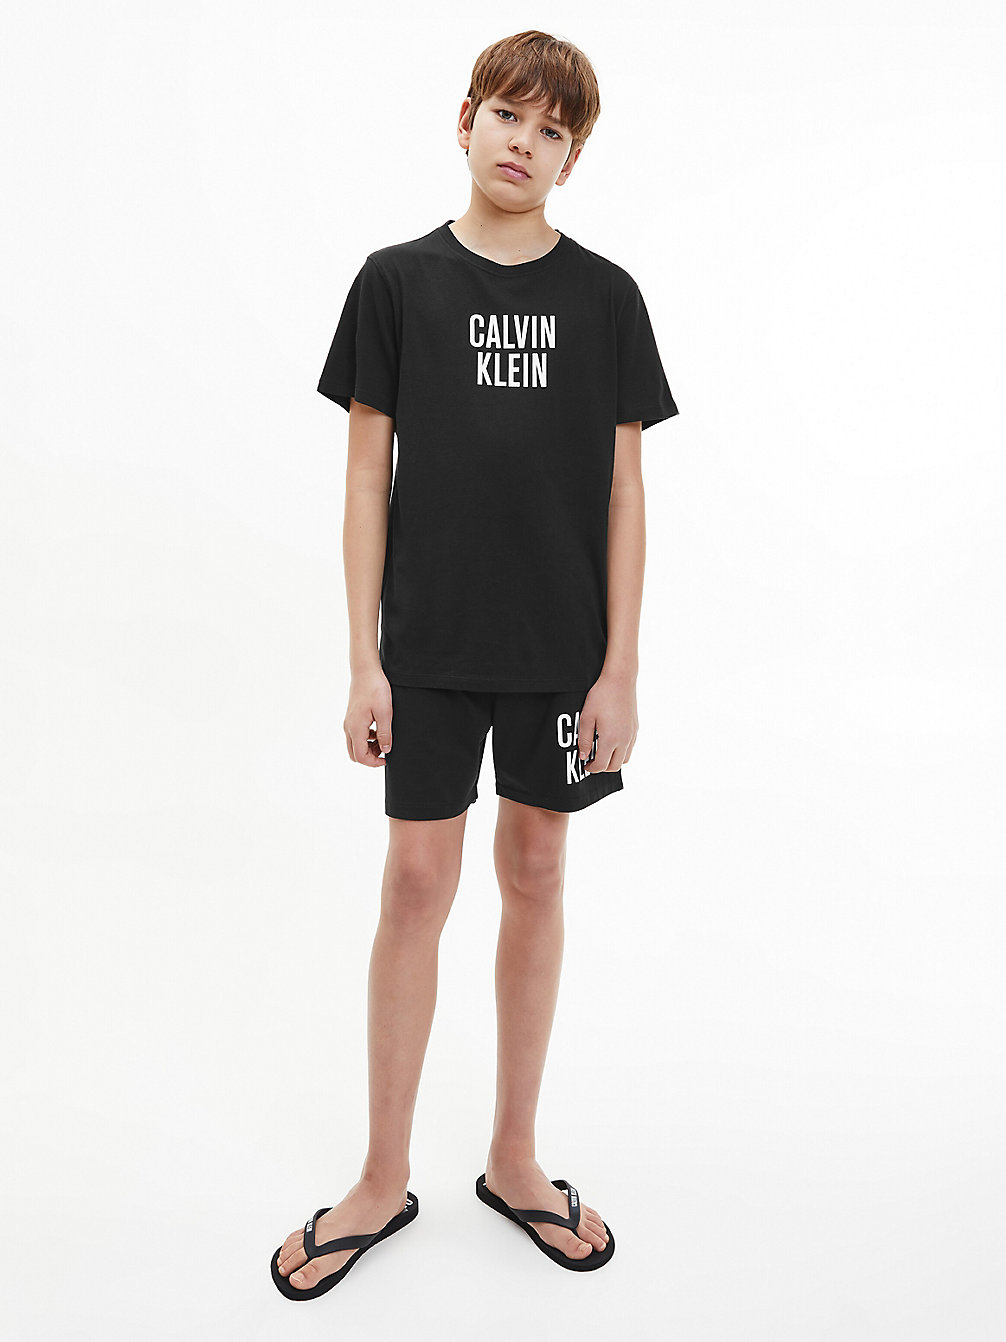 PVH BLACK Jungen-Strandshorts - Intense Power undefined Jungen Calvin Klein